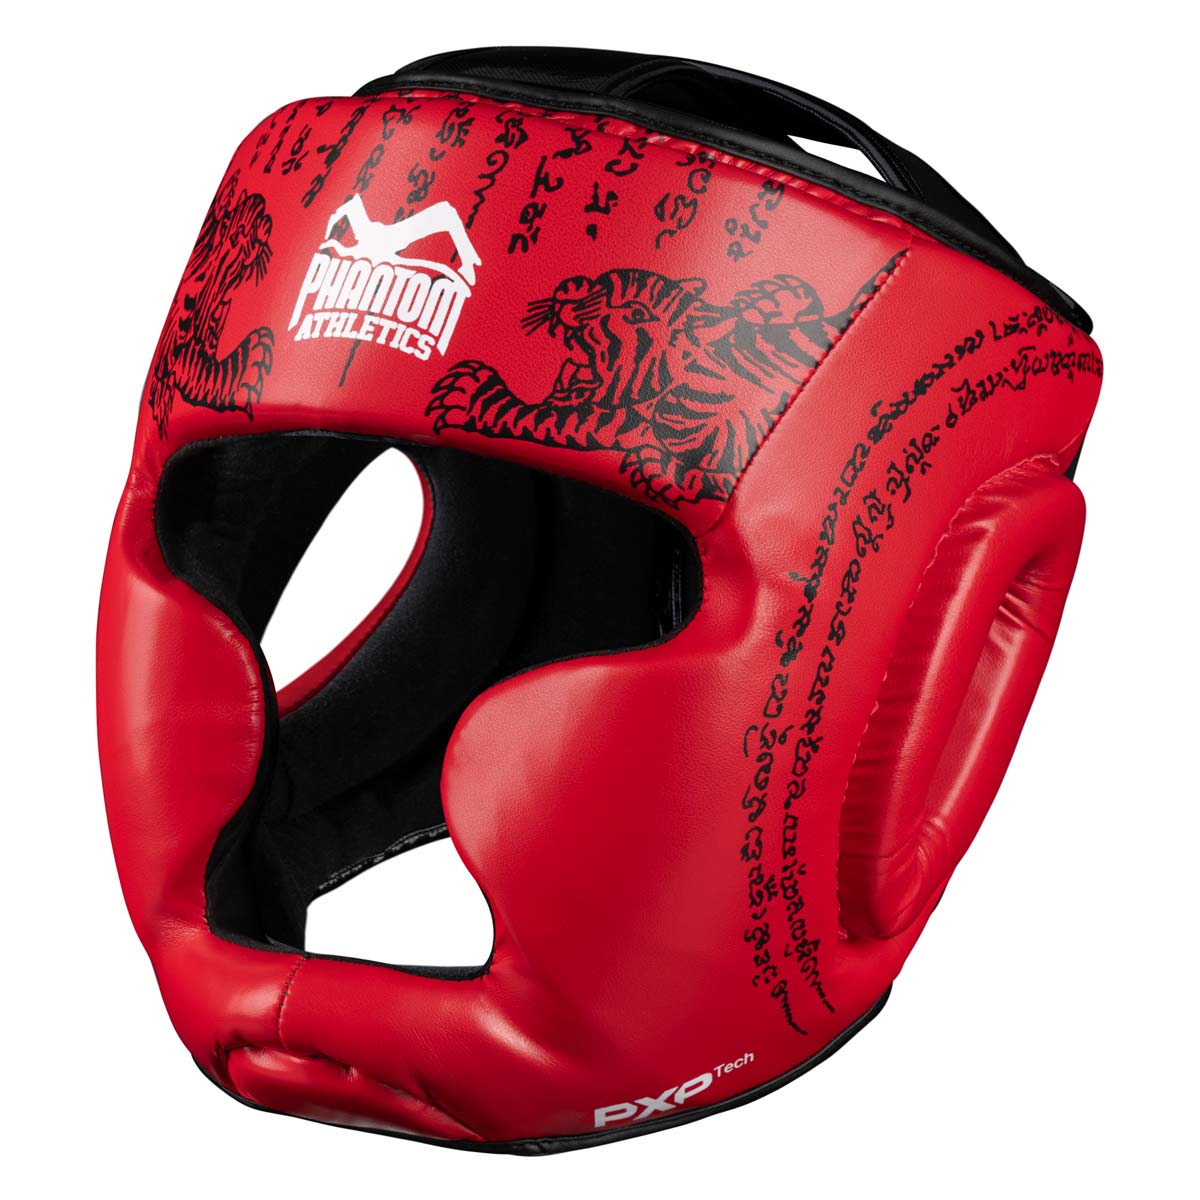 Phantom Muay Thai ochrana hlavy pro thajský box a MMA sparing, soutěže a trénink. V tradičním designu Sak Yant a červené barvě.